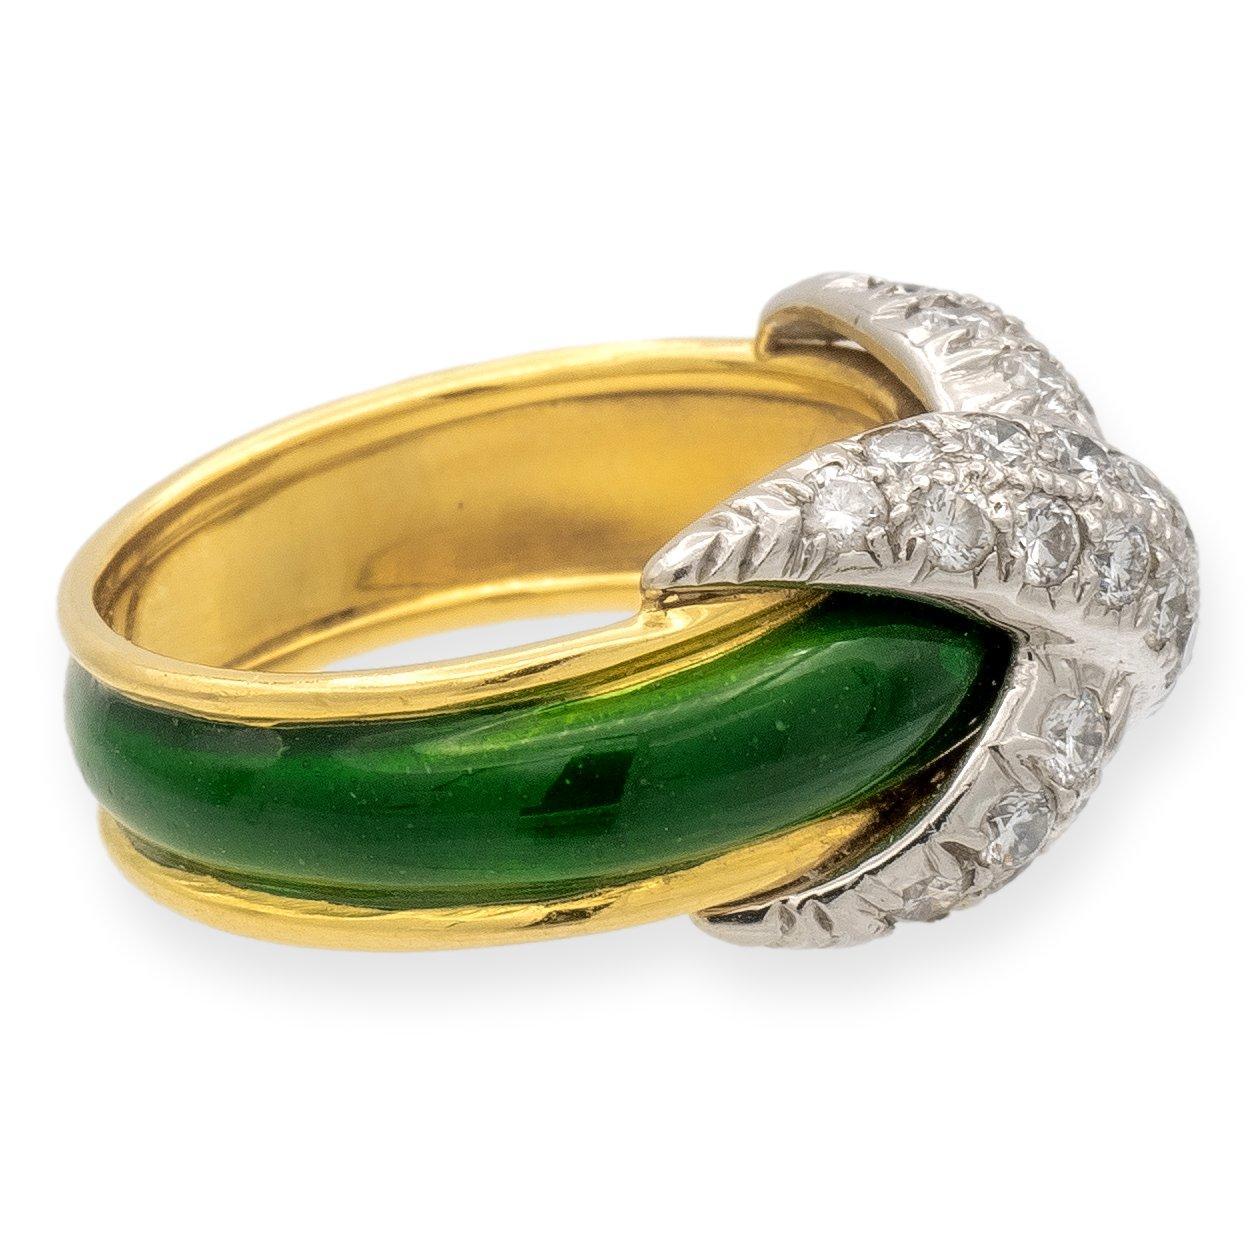 Tiffany & Co. Bague de la Collection S/One, finement travaillée en or jaune 18 carats dans un design effilé, ornée d'émail vert vif, culminant dans un centre à motif X en platine. La monture en platine est ornée de diamants ronds de taille brillant,